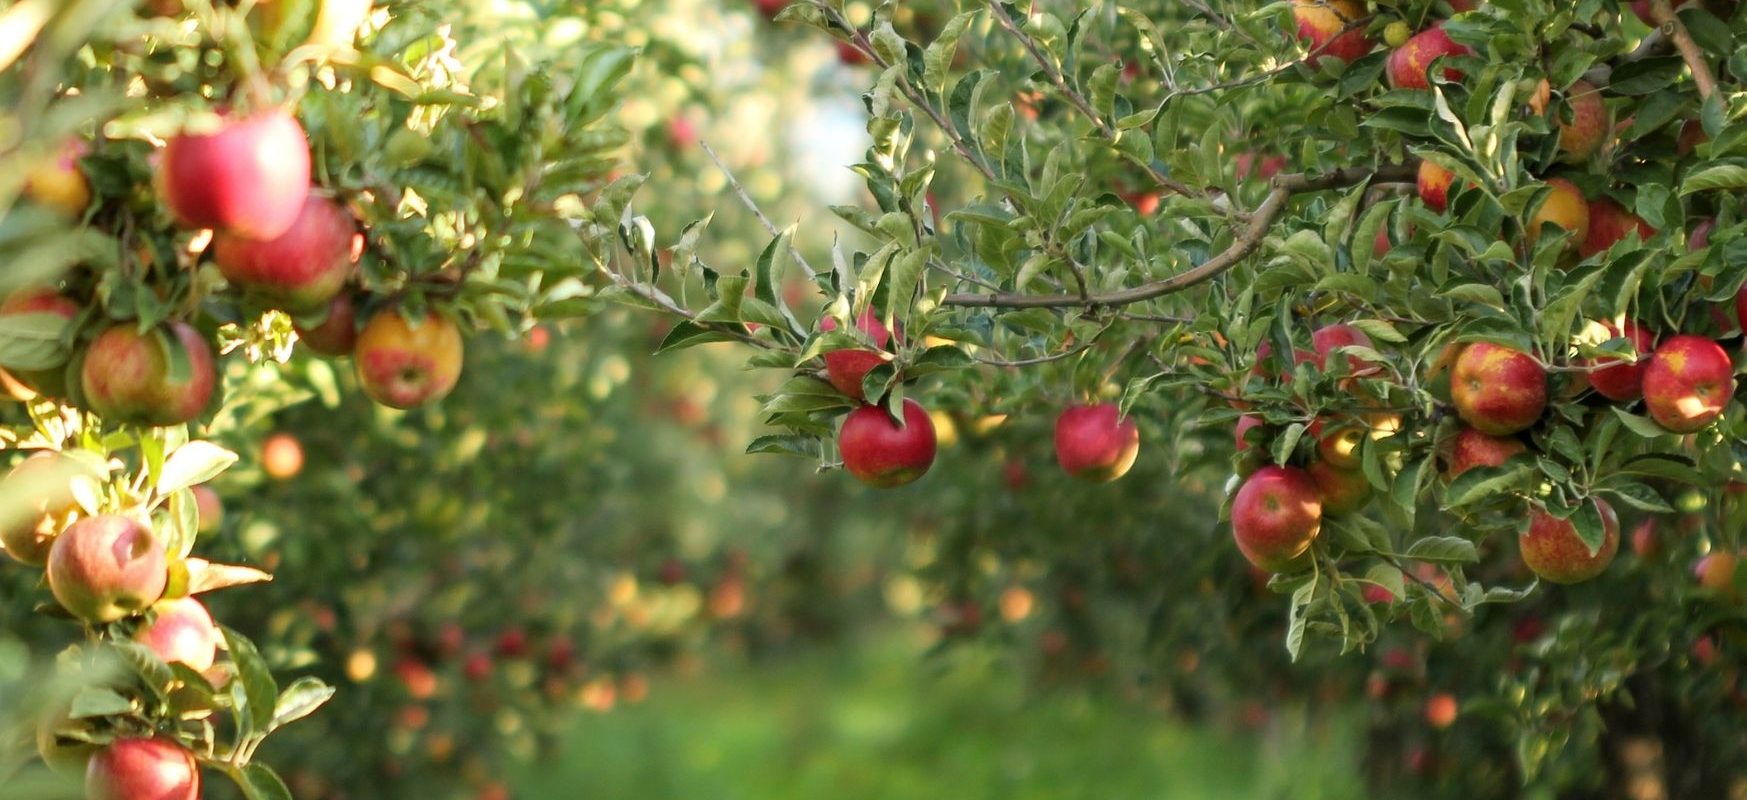 Infos und Tipps zum Anlegen eines Obstgarten